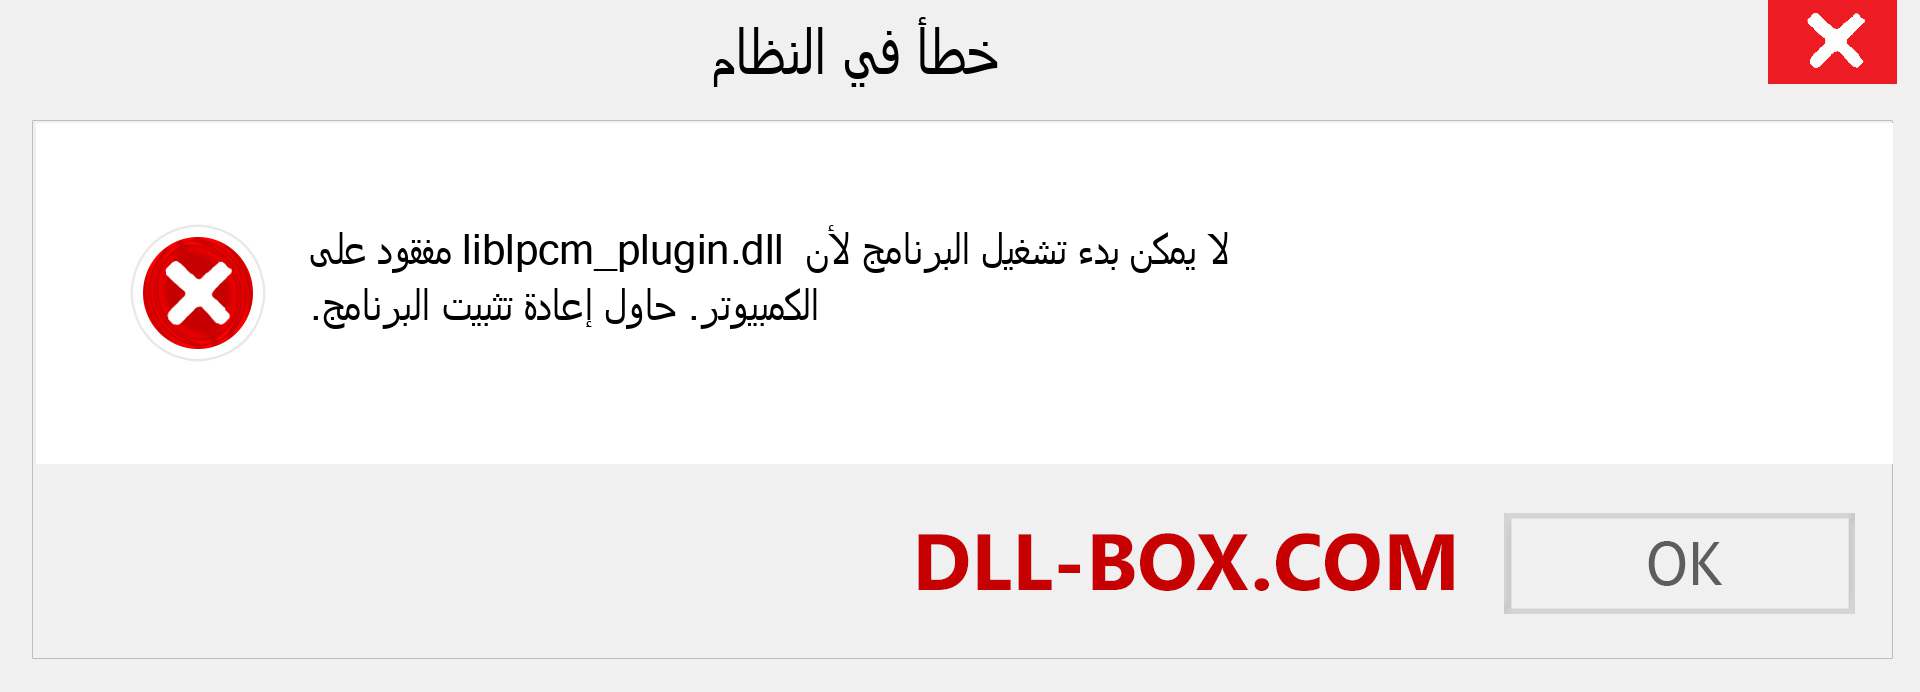 ملف liblpcm_plugin.dll مفقود ؟. التنزيل لنظام التشغيل Windows 7 و 8 و 10 - إصلاح خطأ liblpcm_plugin dll المفقود على Windows والصور والصور